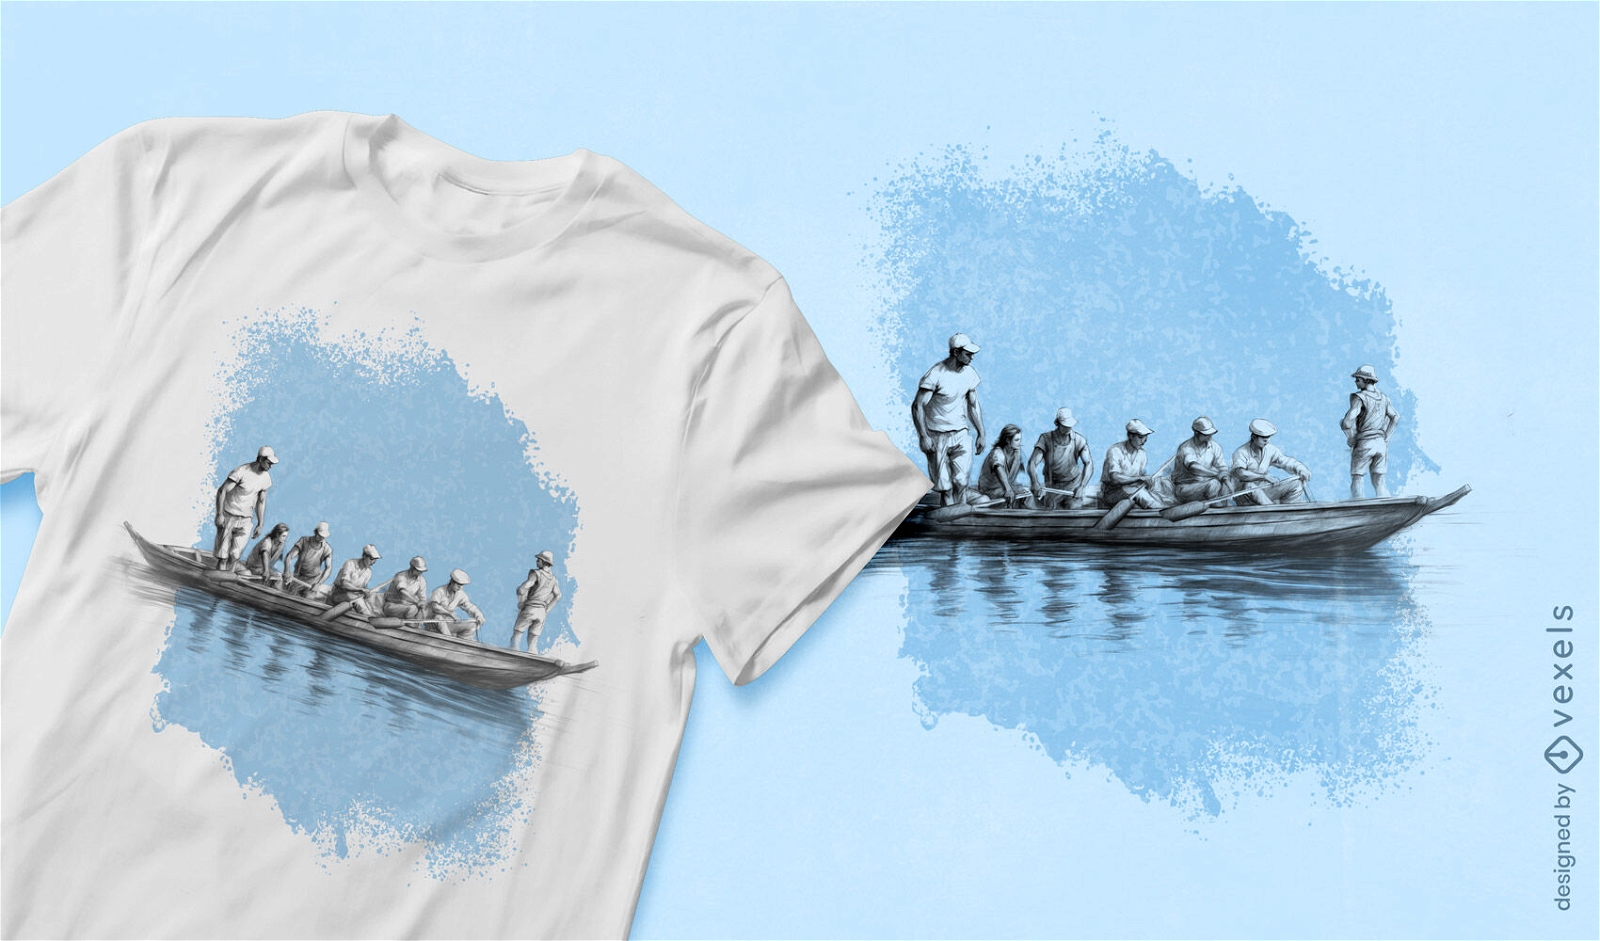 Boat sketch on t-shirt design